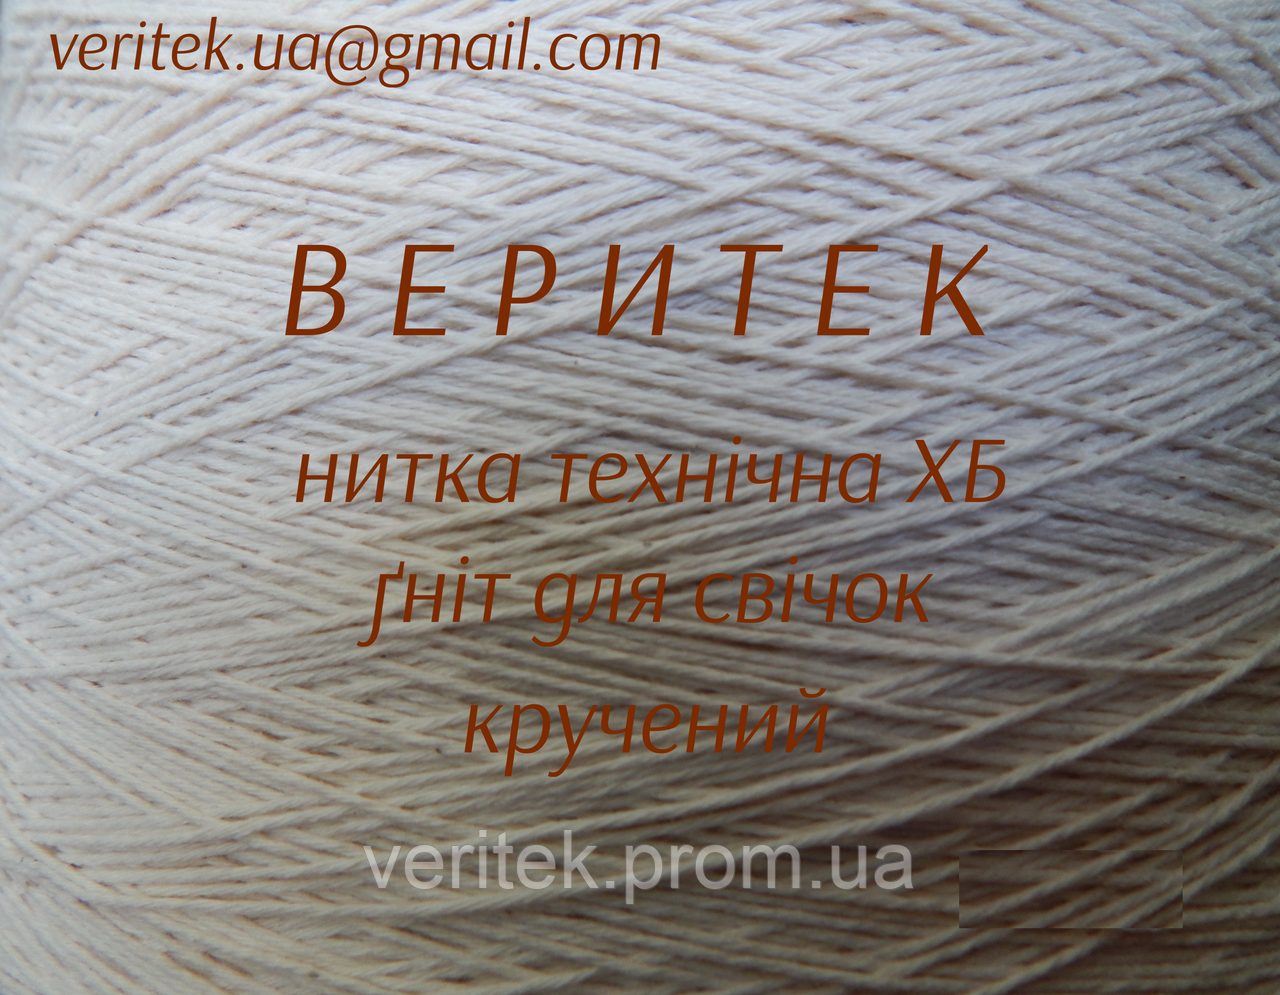 Ґніт для свічок  (доступний під замовлення на сайті veritek.prom.ua або за тел.0675721597)